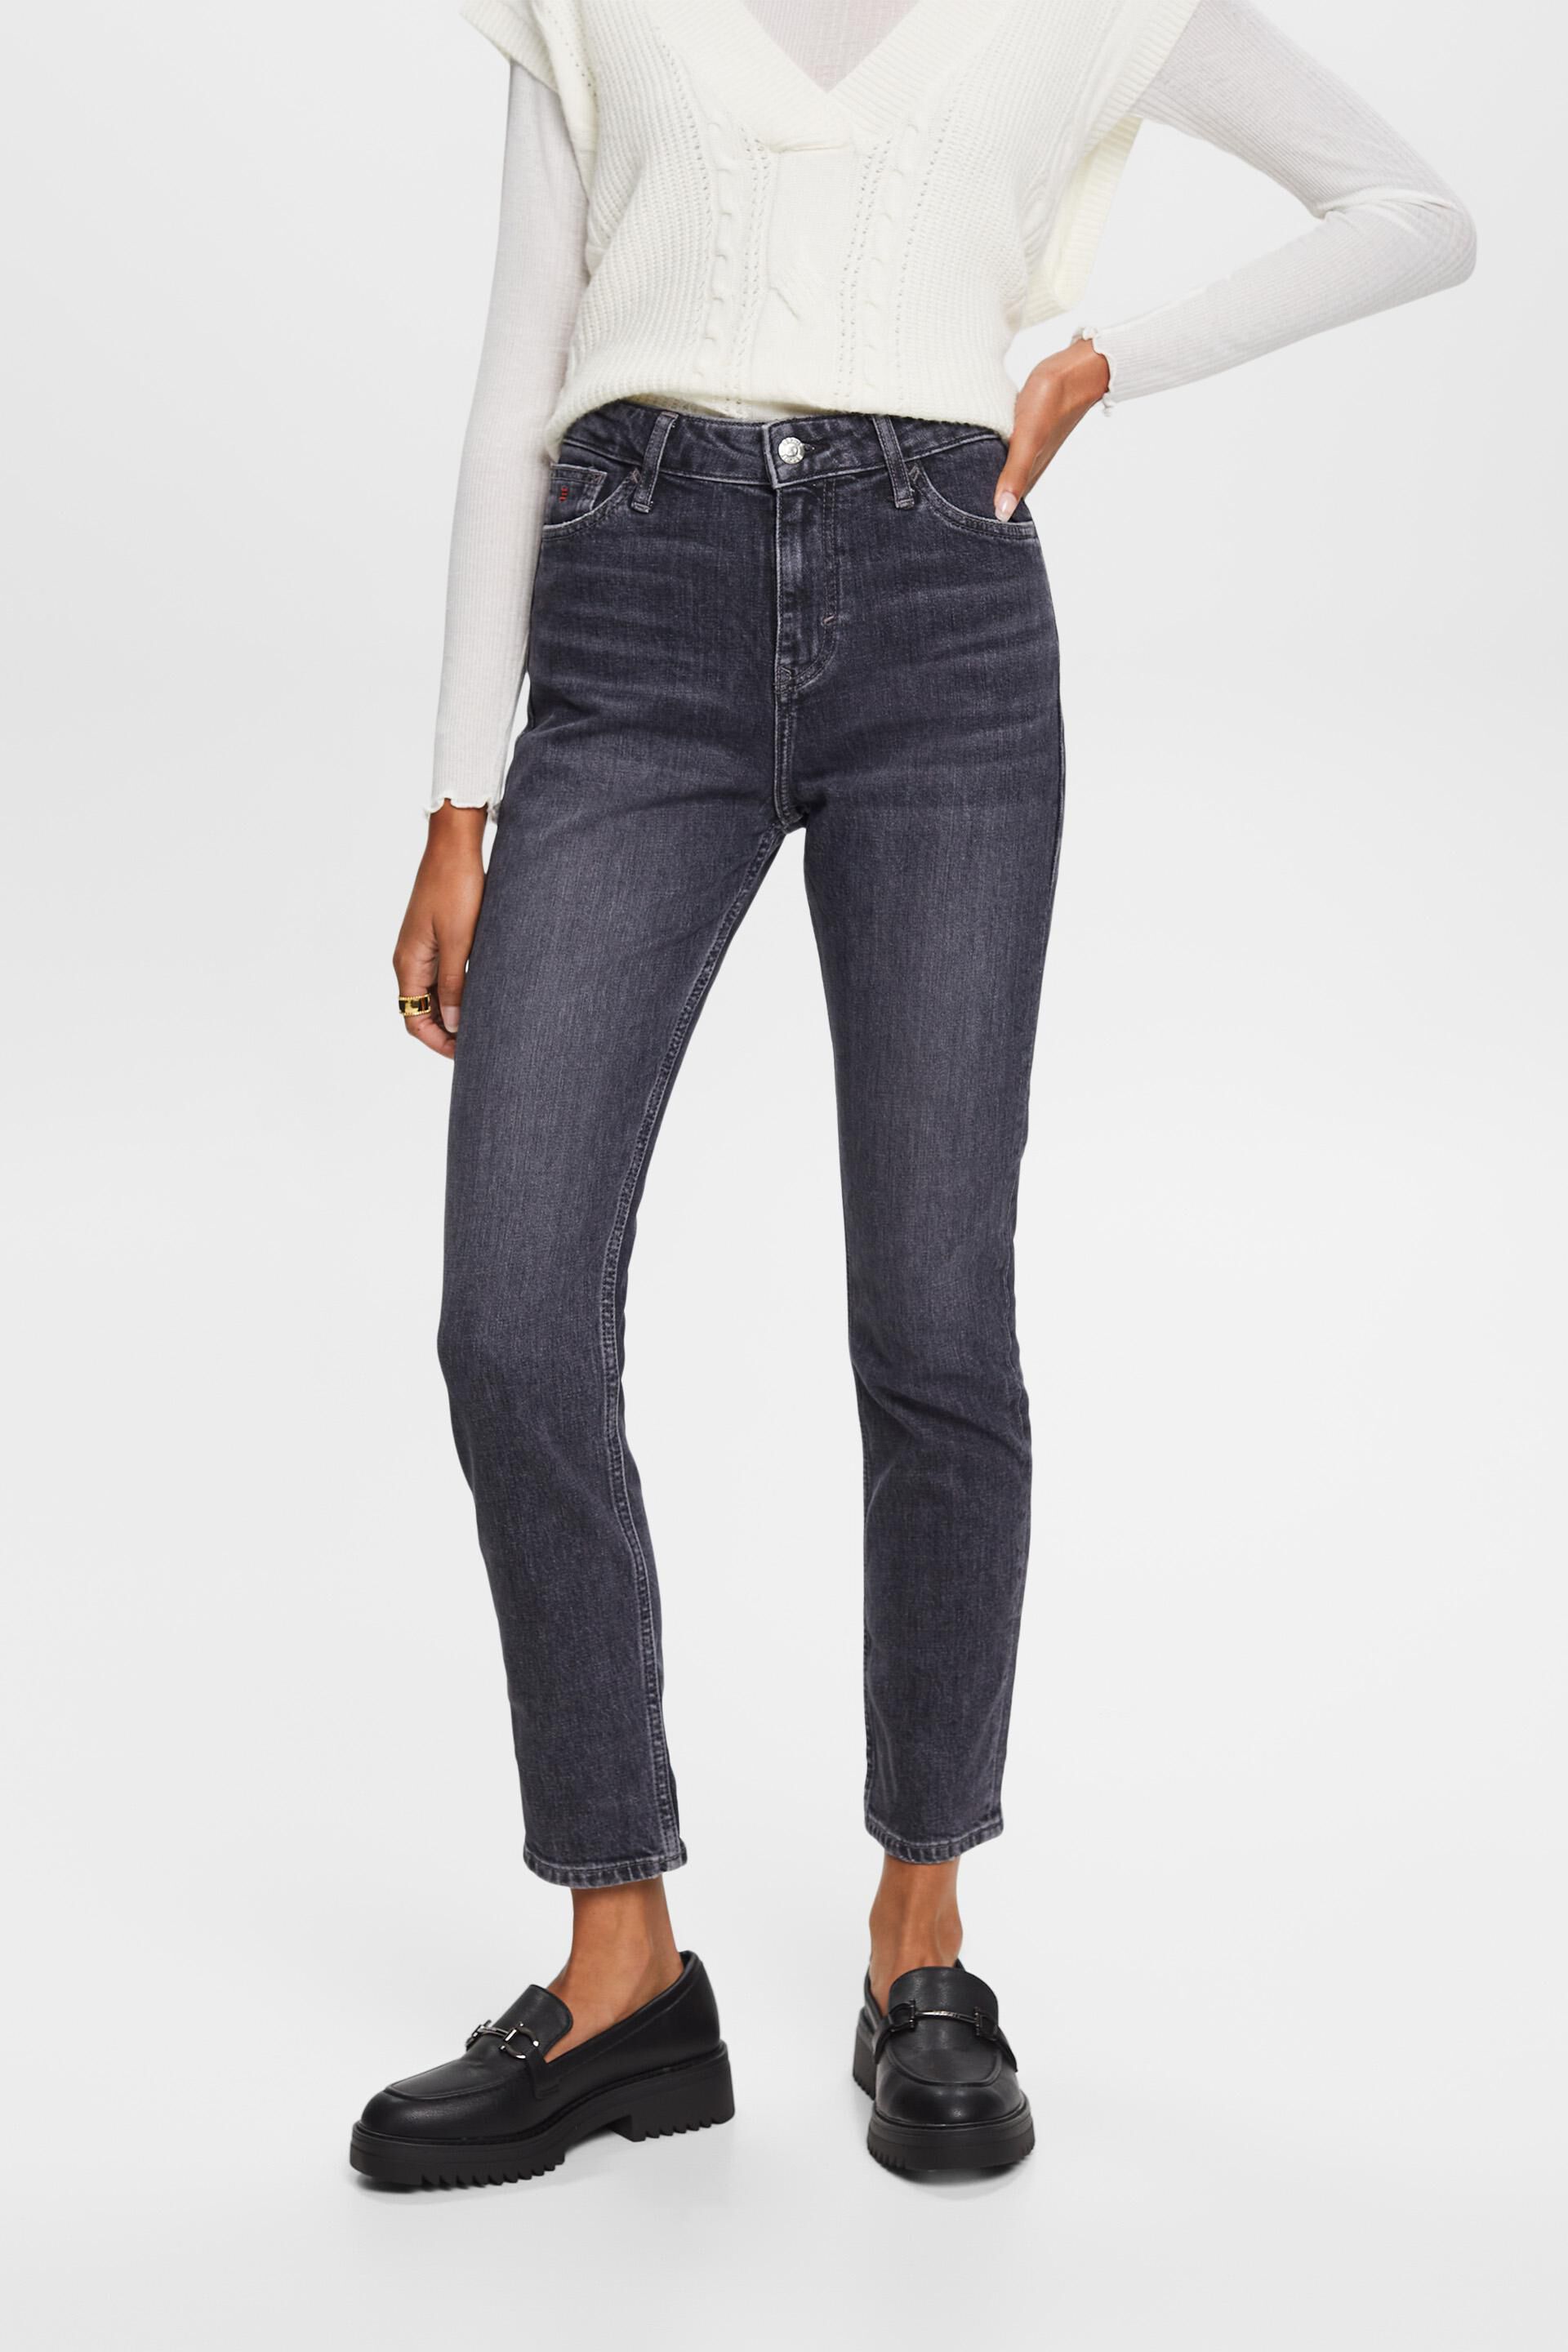 Esprit Premium fit jeans stretch slim